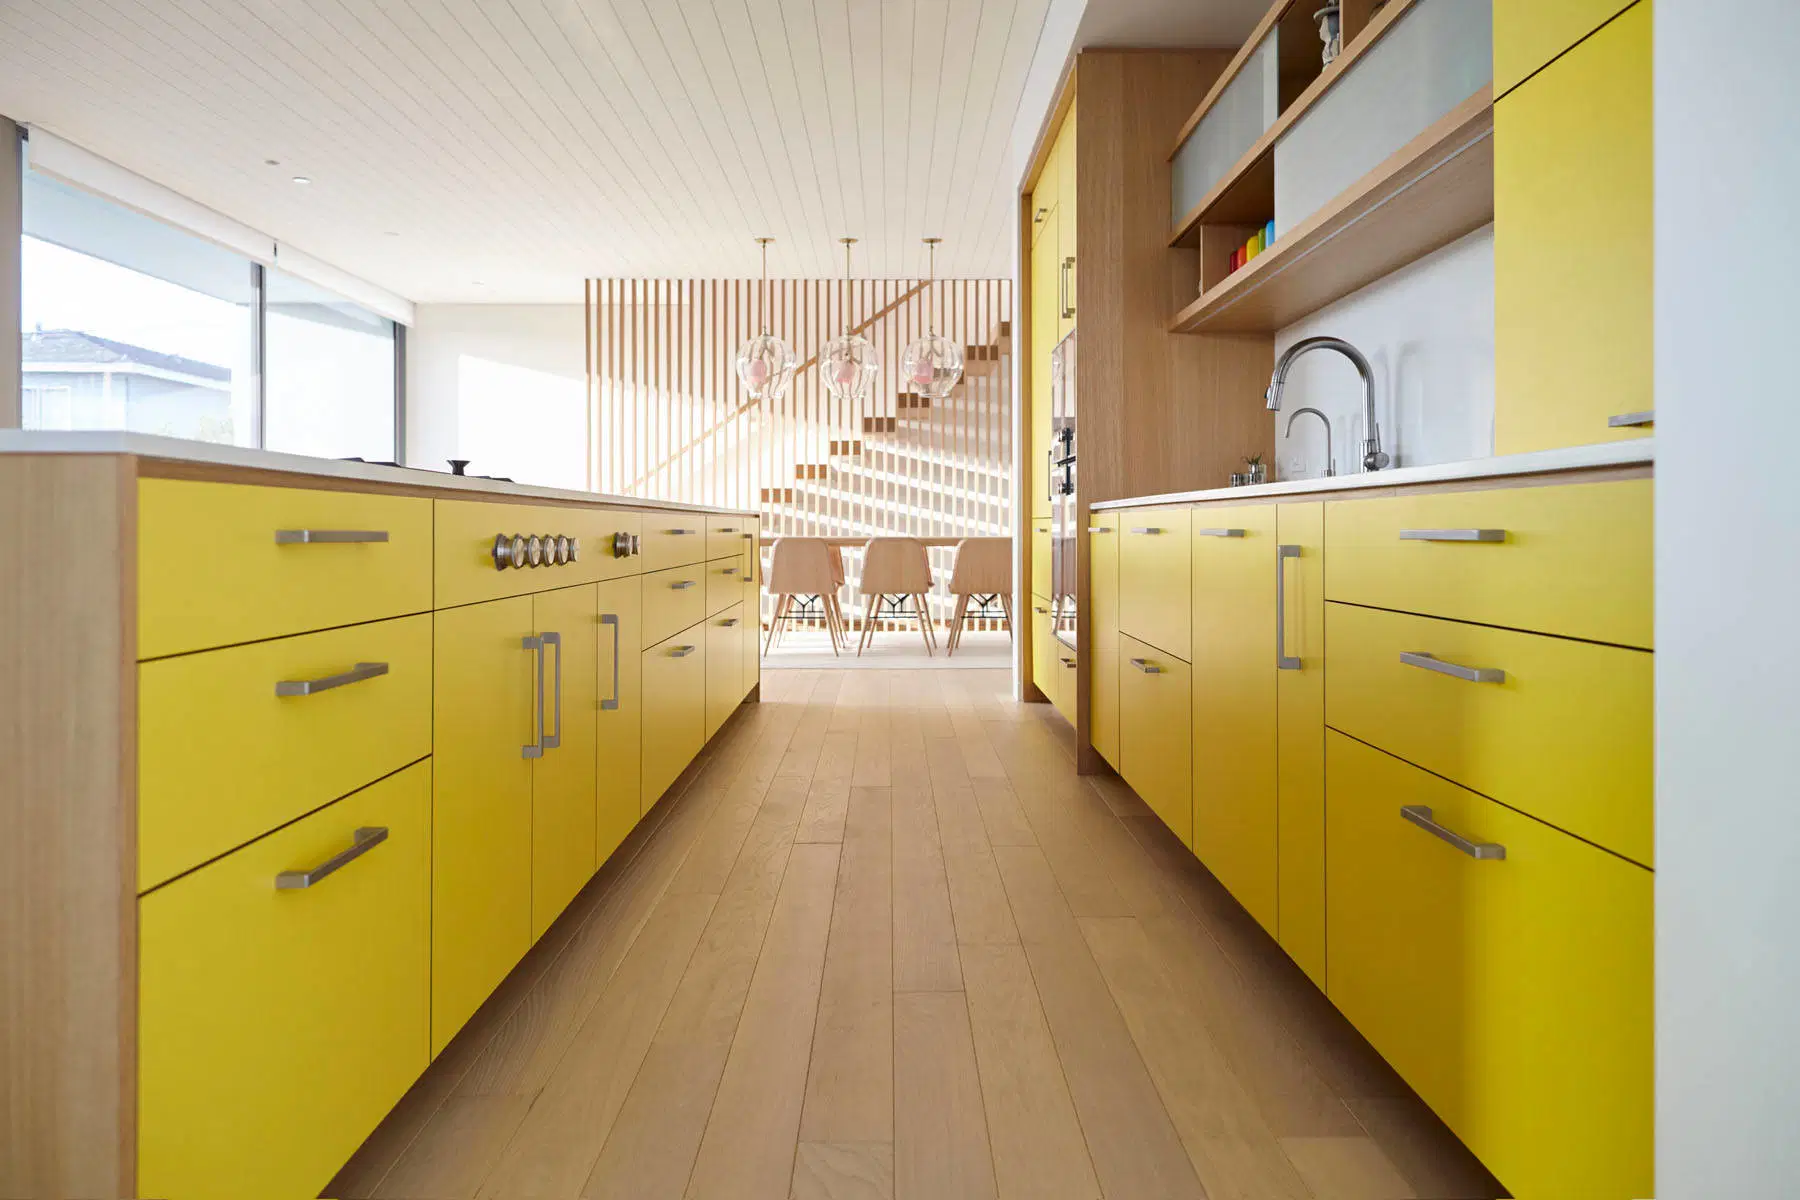 Design plano Melamina Amarela do painel de porta de móveis domésticos Cabinet ideias de cozinha